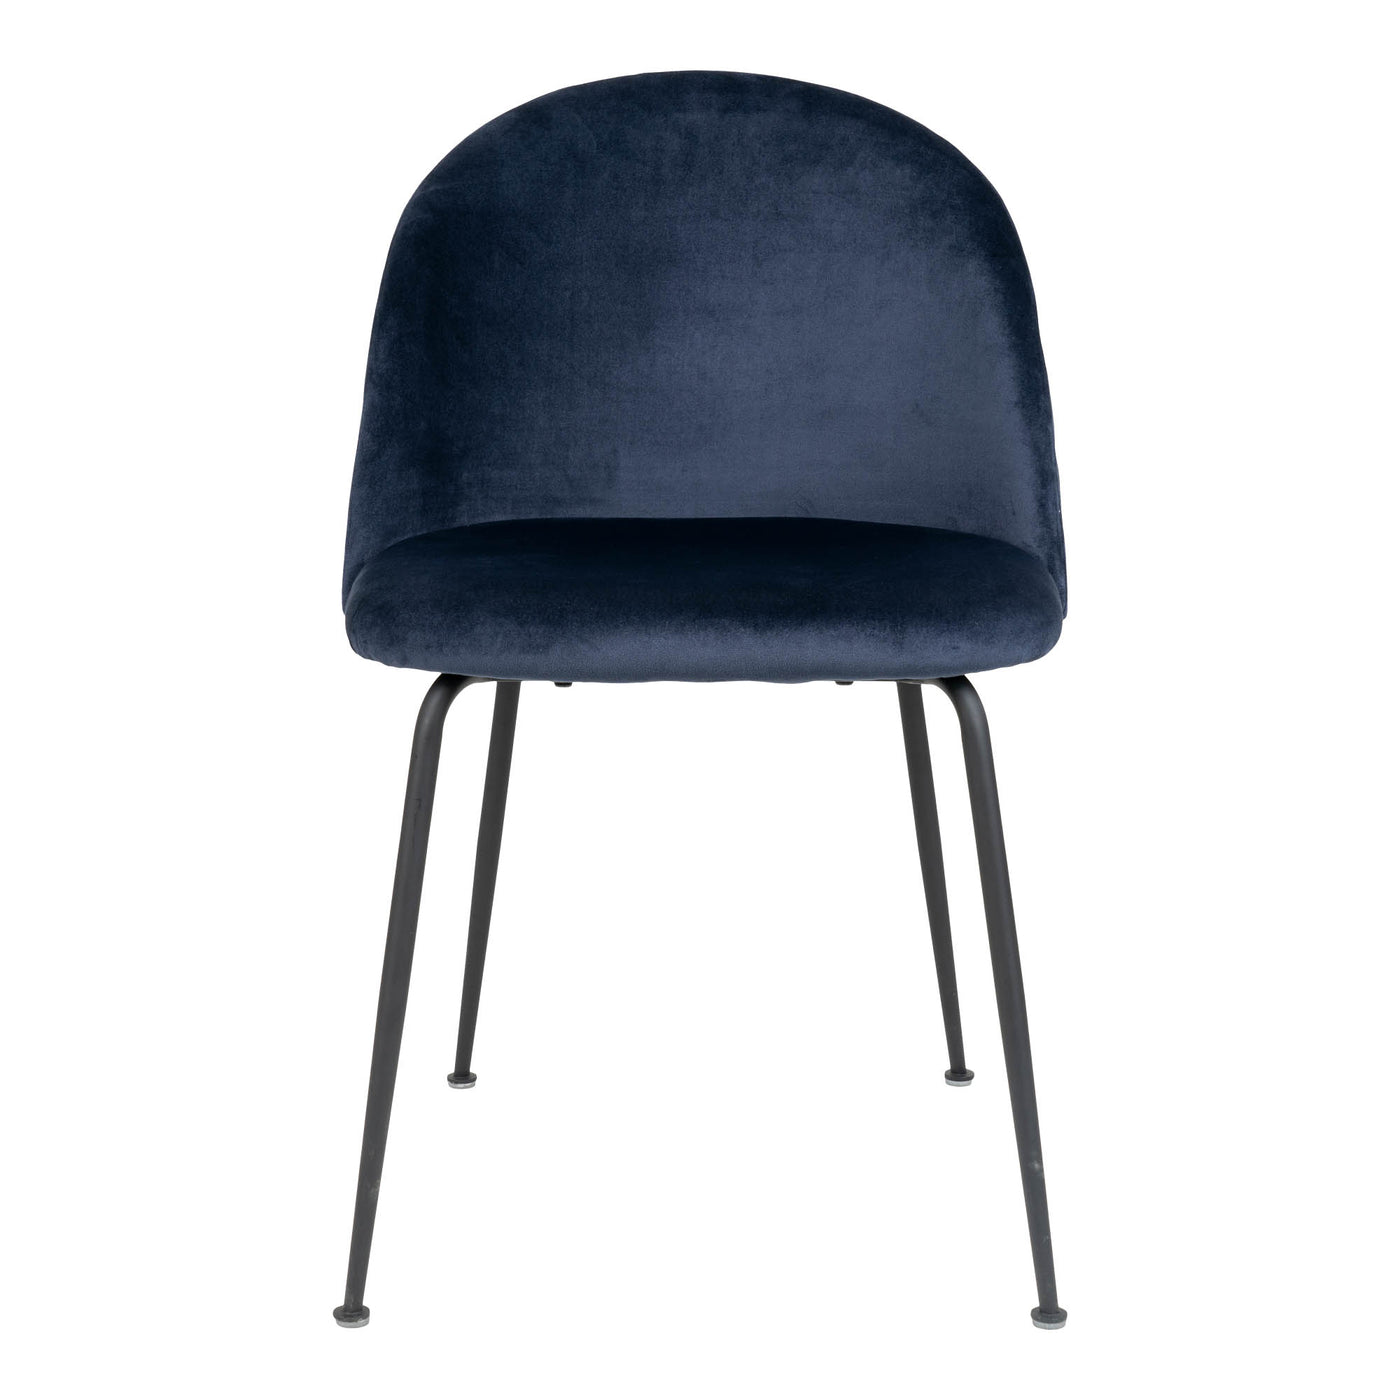 Geneve tuoli, sininen sametti